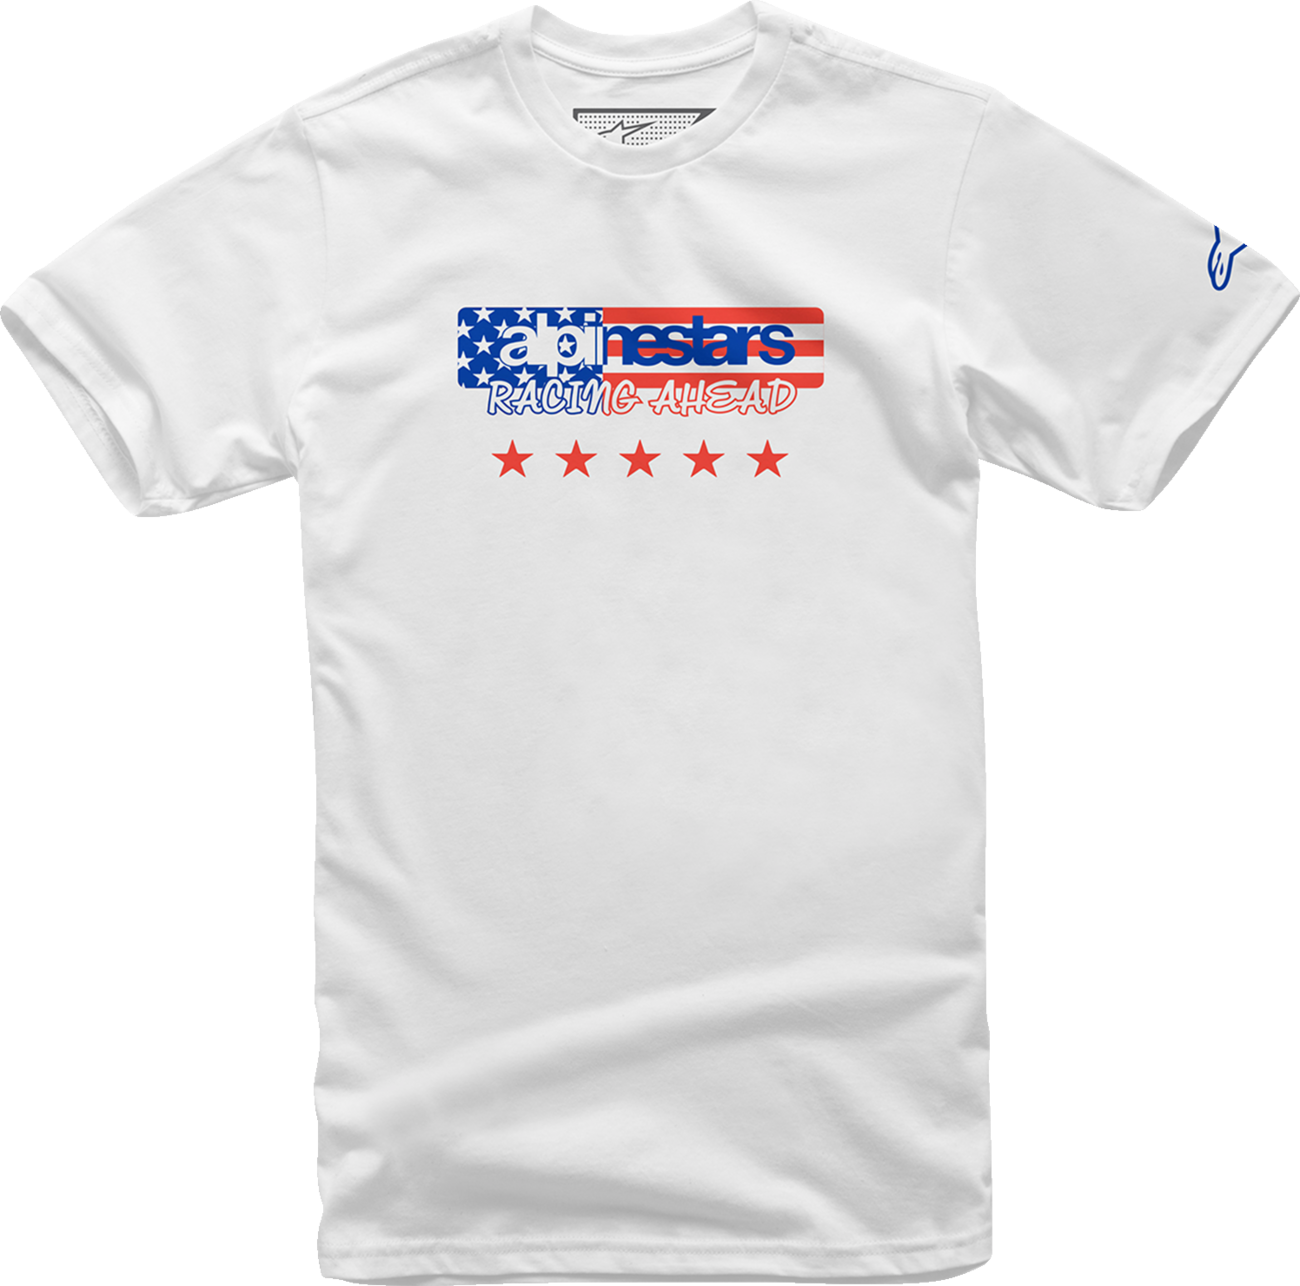 ALPINESTARS USA Again T-Shirt - White - Large 12137261020L